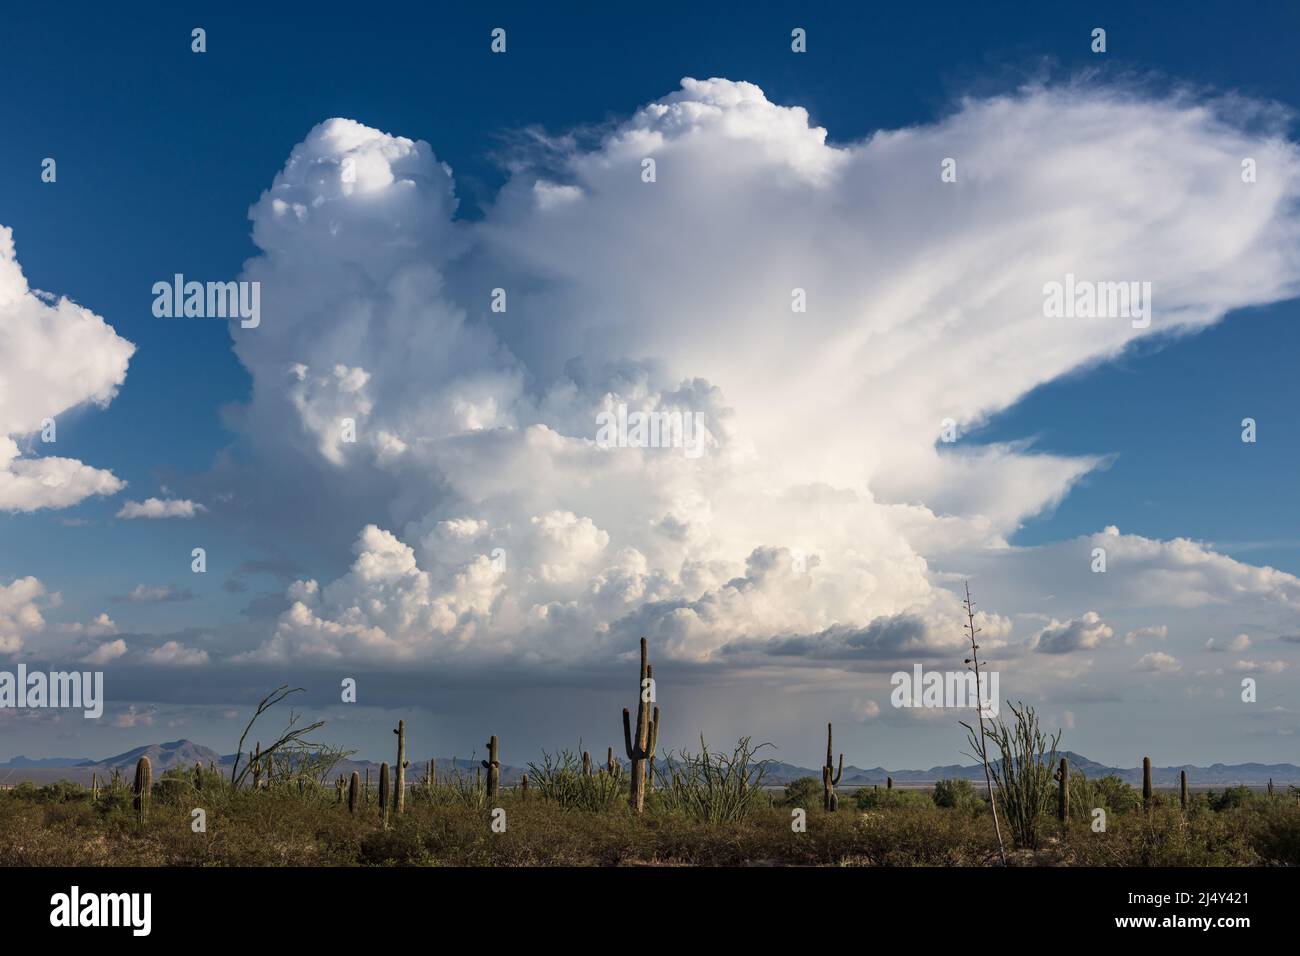 Wabenartige Cumulonimbus-Wolken von einem Gewitter in der Monsunsaison in der Wüste von Arizona Stockfoto